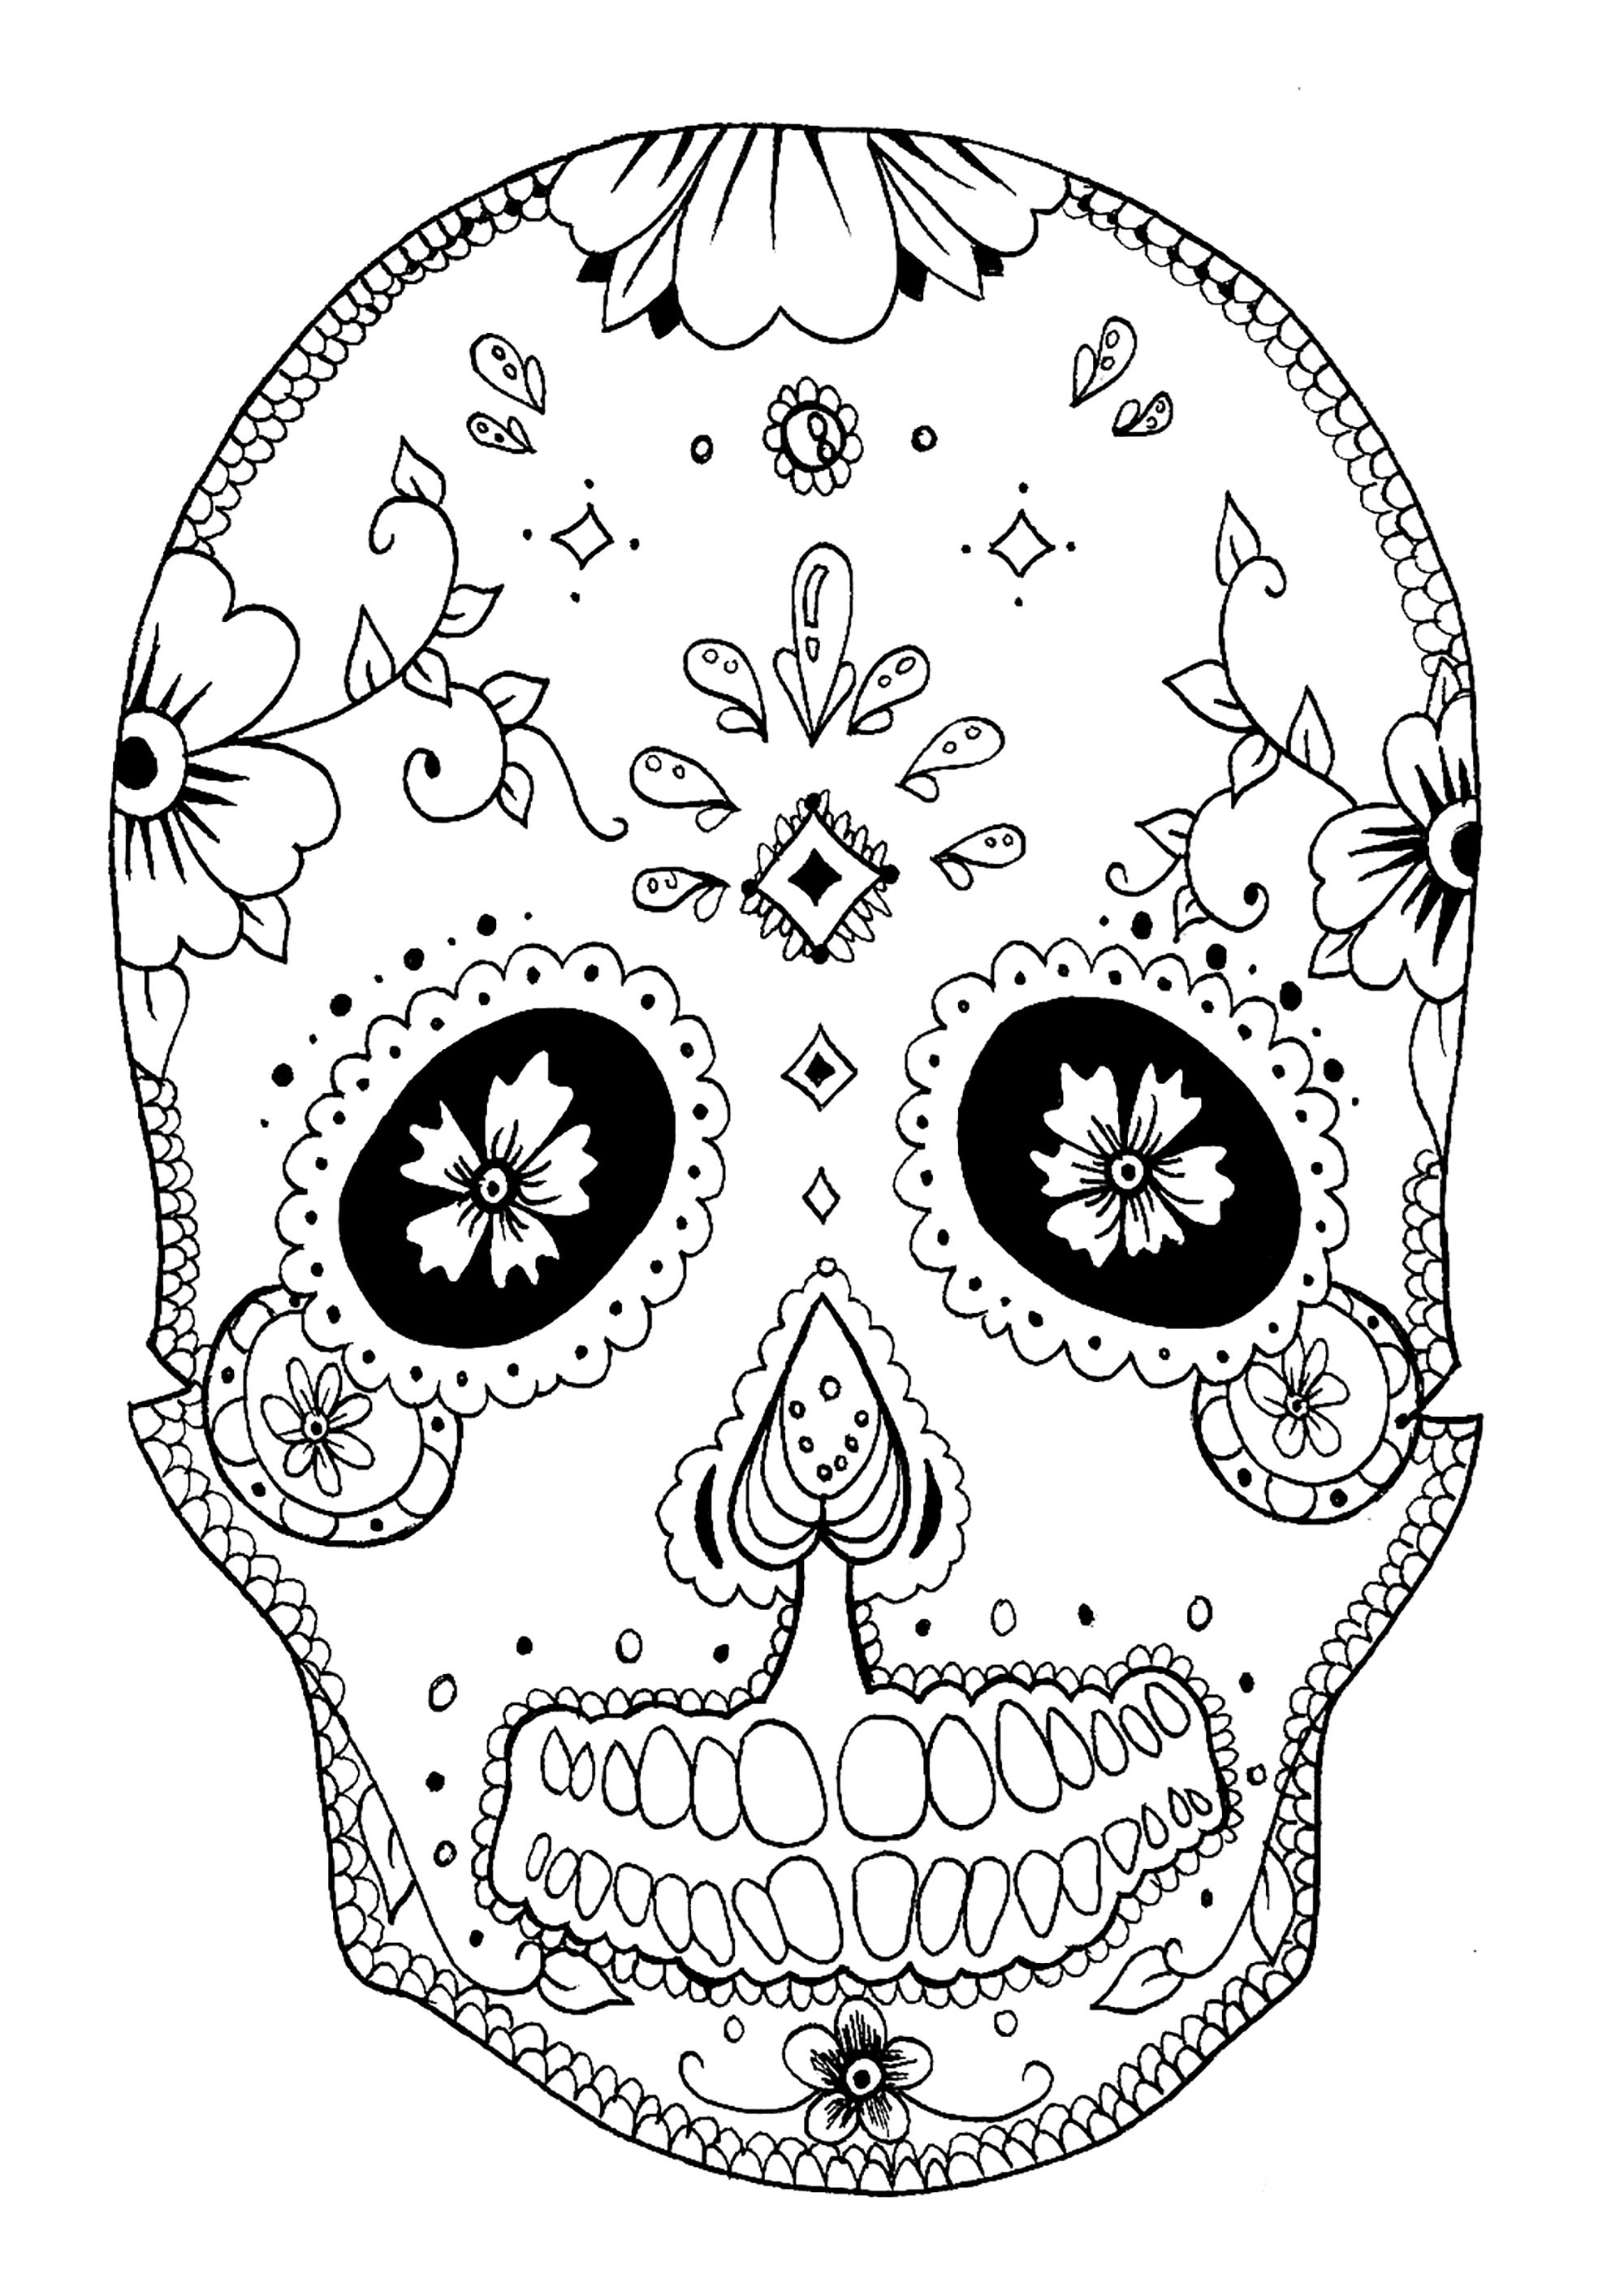 El Día de los Muertos : skull to color, Artist : Rachel